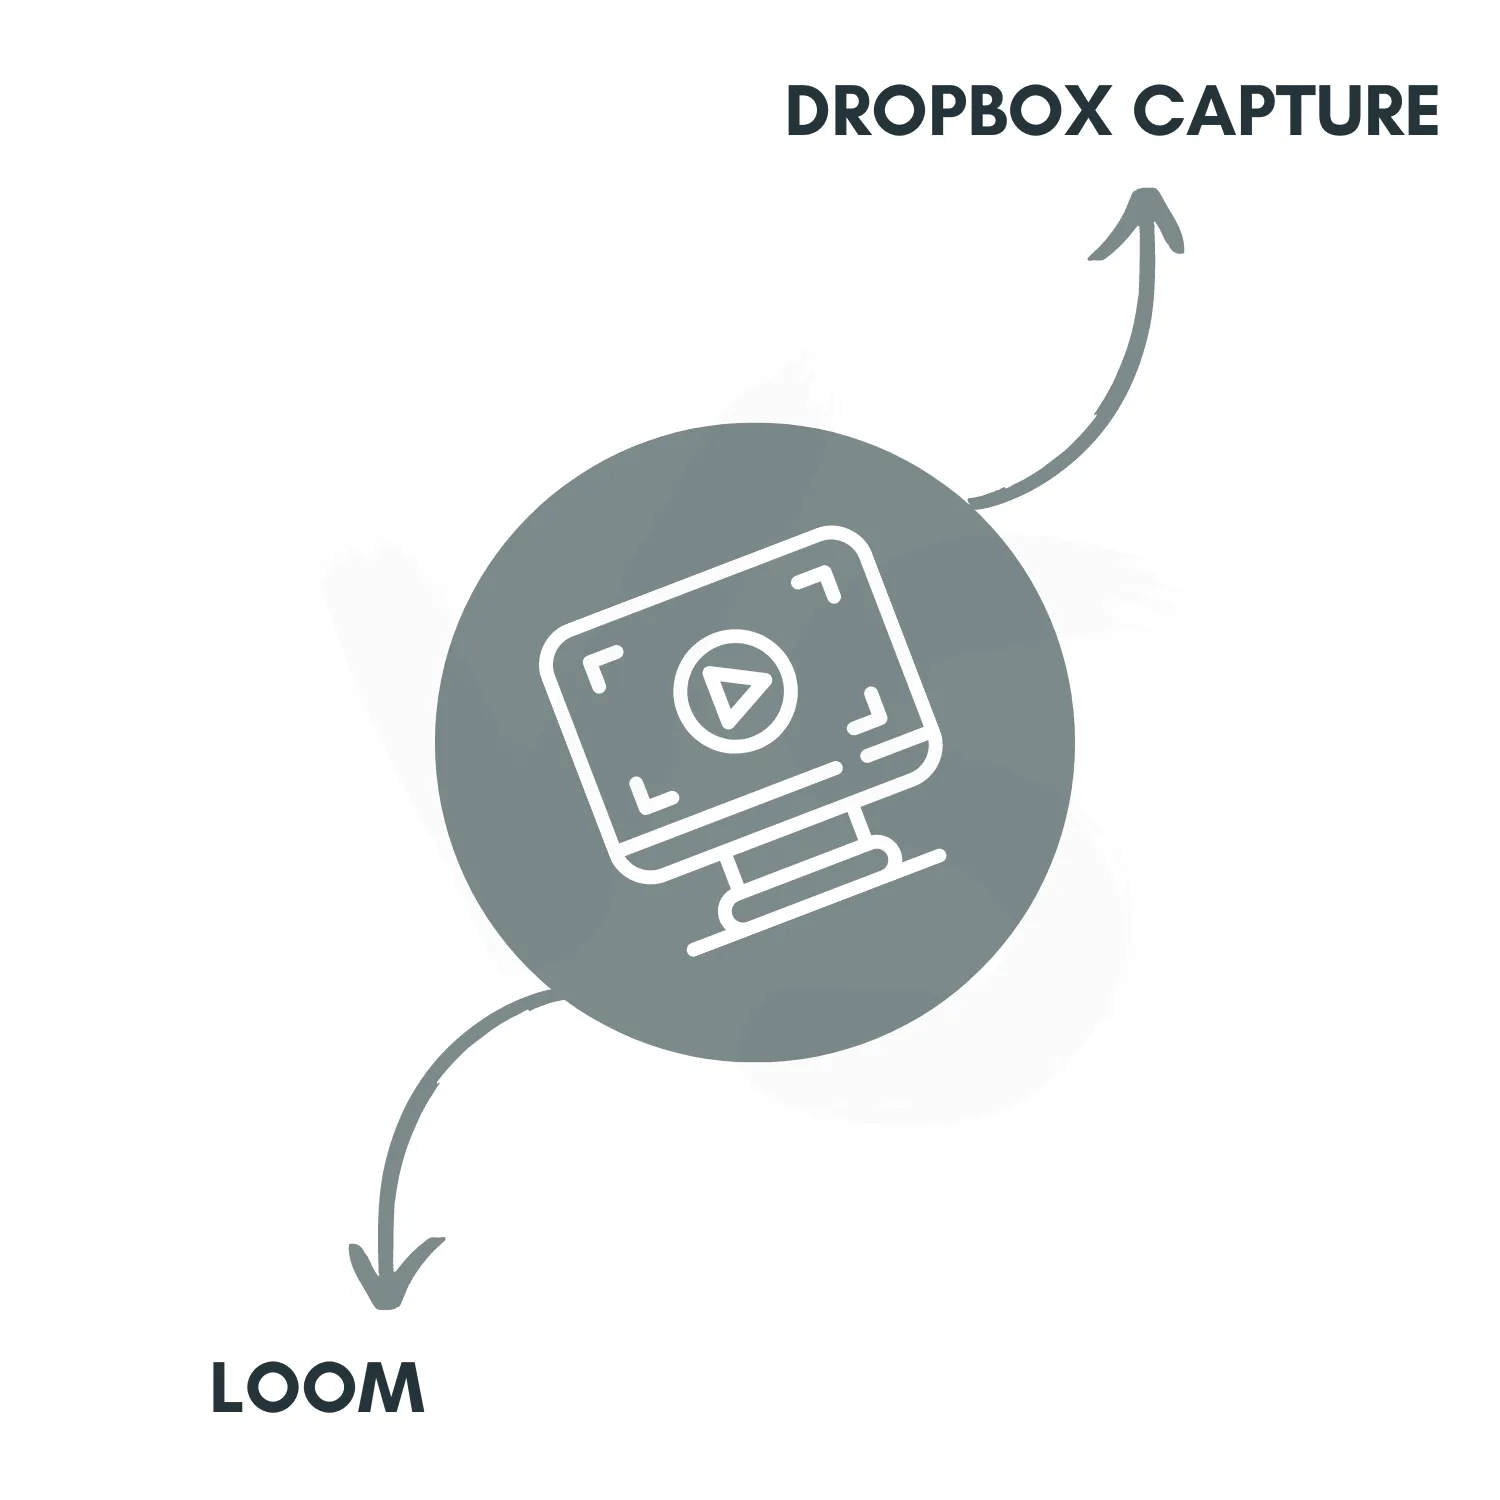 Dropbox Capture vs. Loom